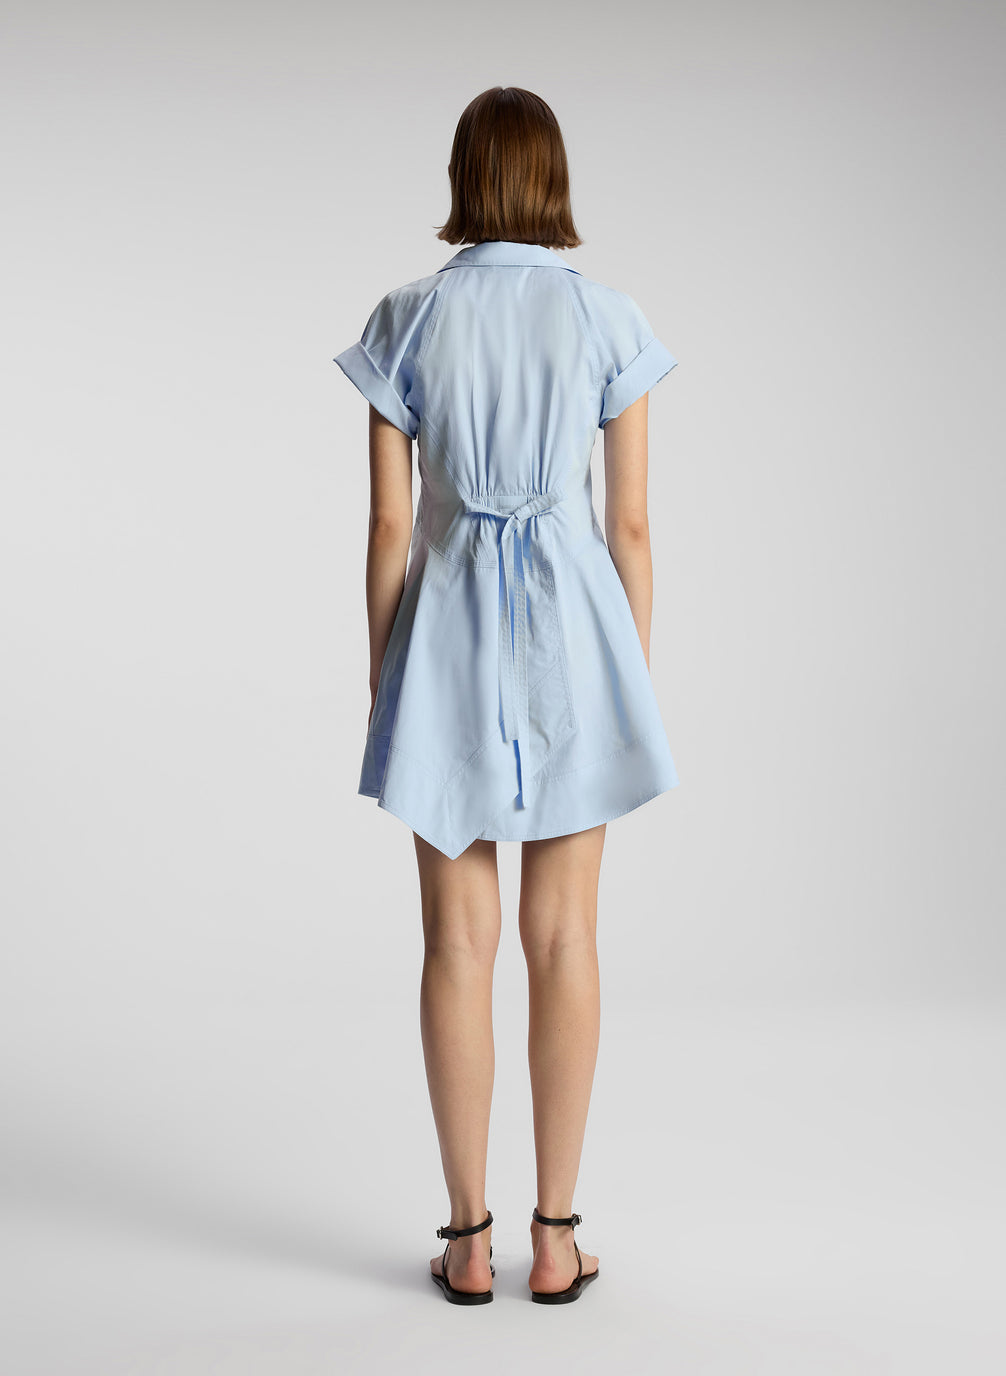 back view of woman wearing light blue mini shirtdress